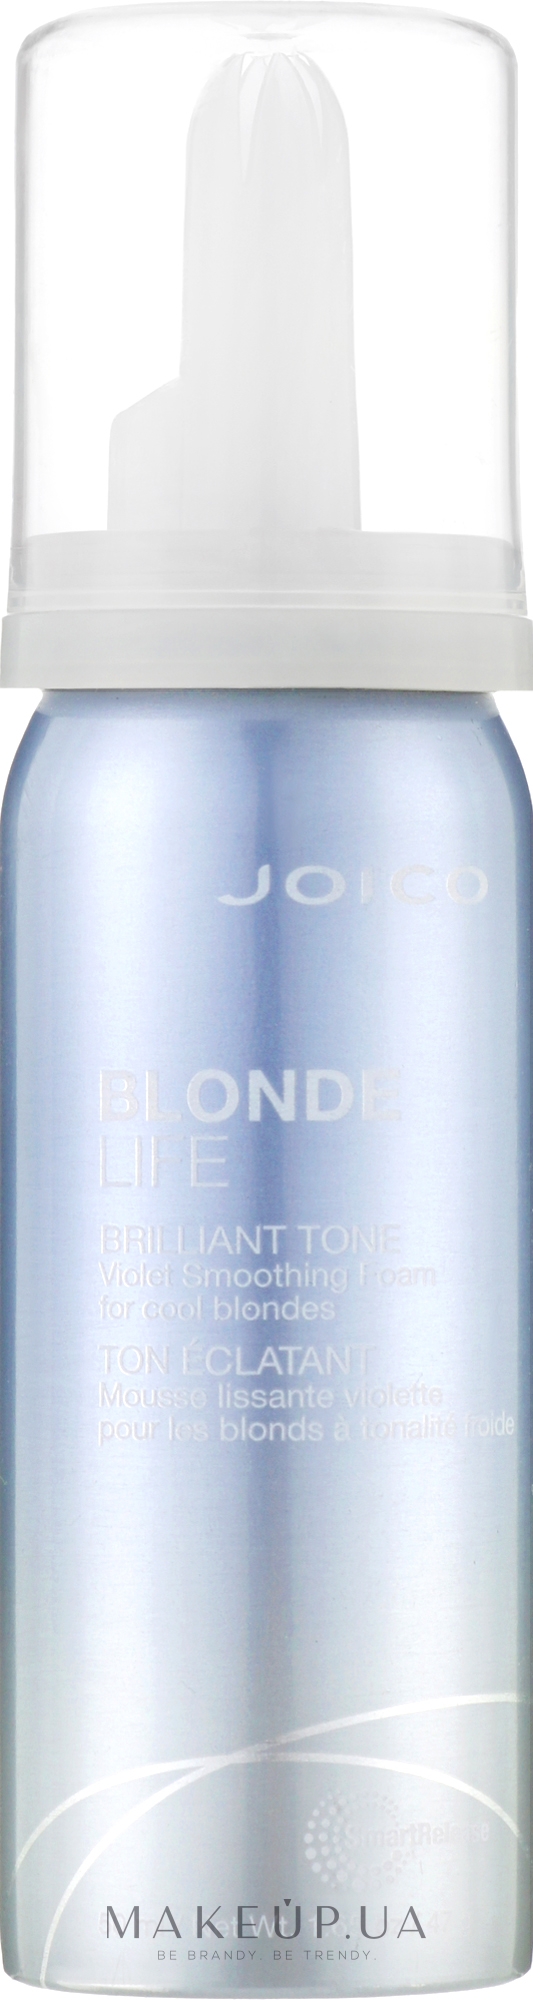 Фиолетовый разглаживающий мусс для сохранения яркости блонда - Joico Blonde Life Brilliant Tone Violet Smoothing Foam — фото 50ml